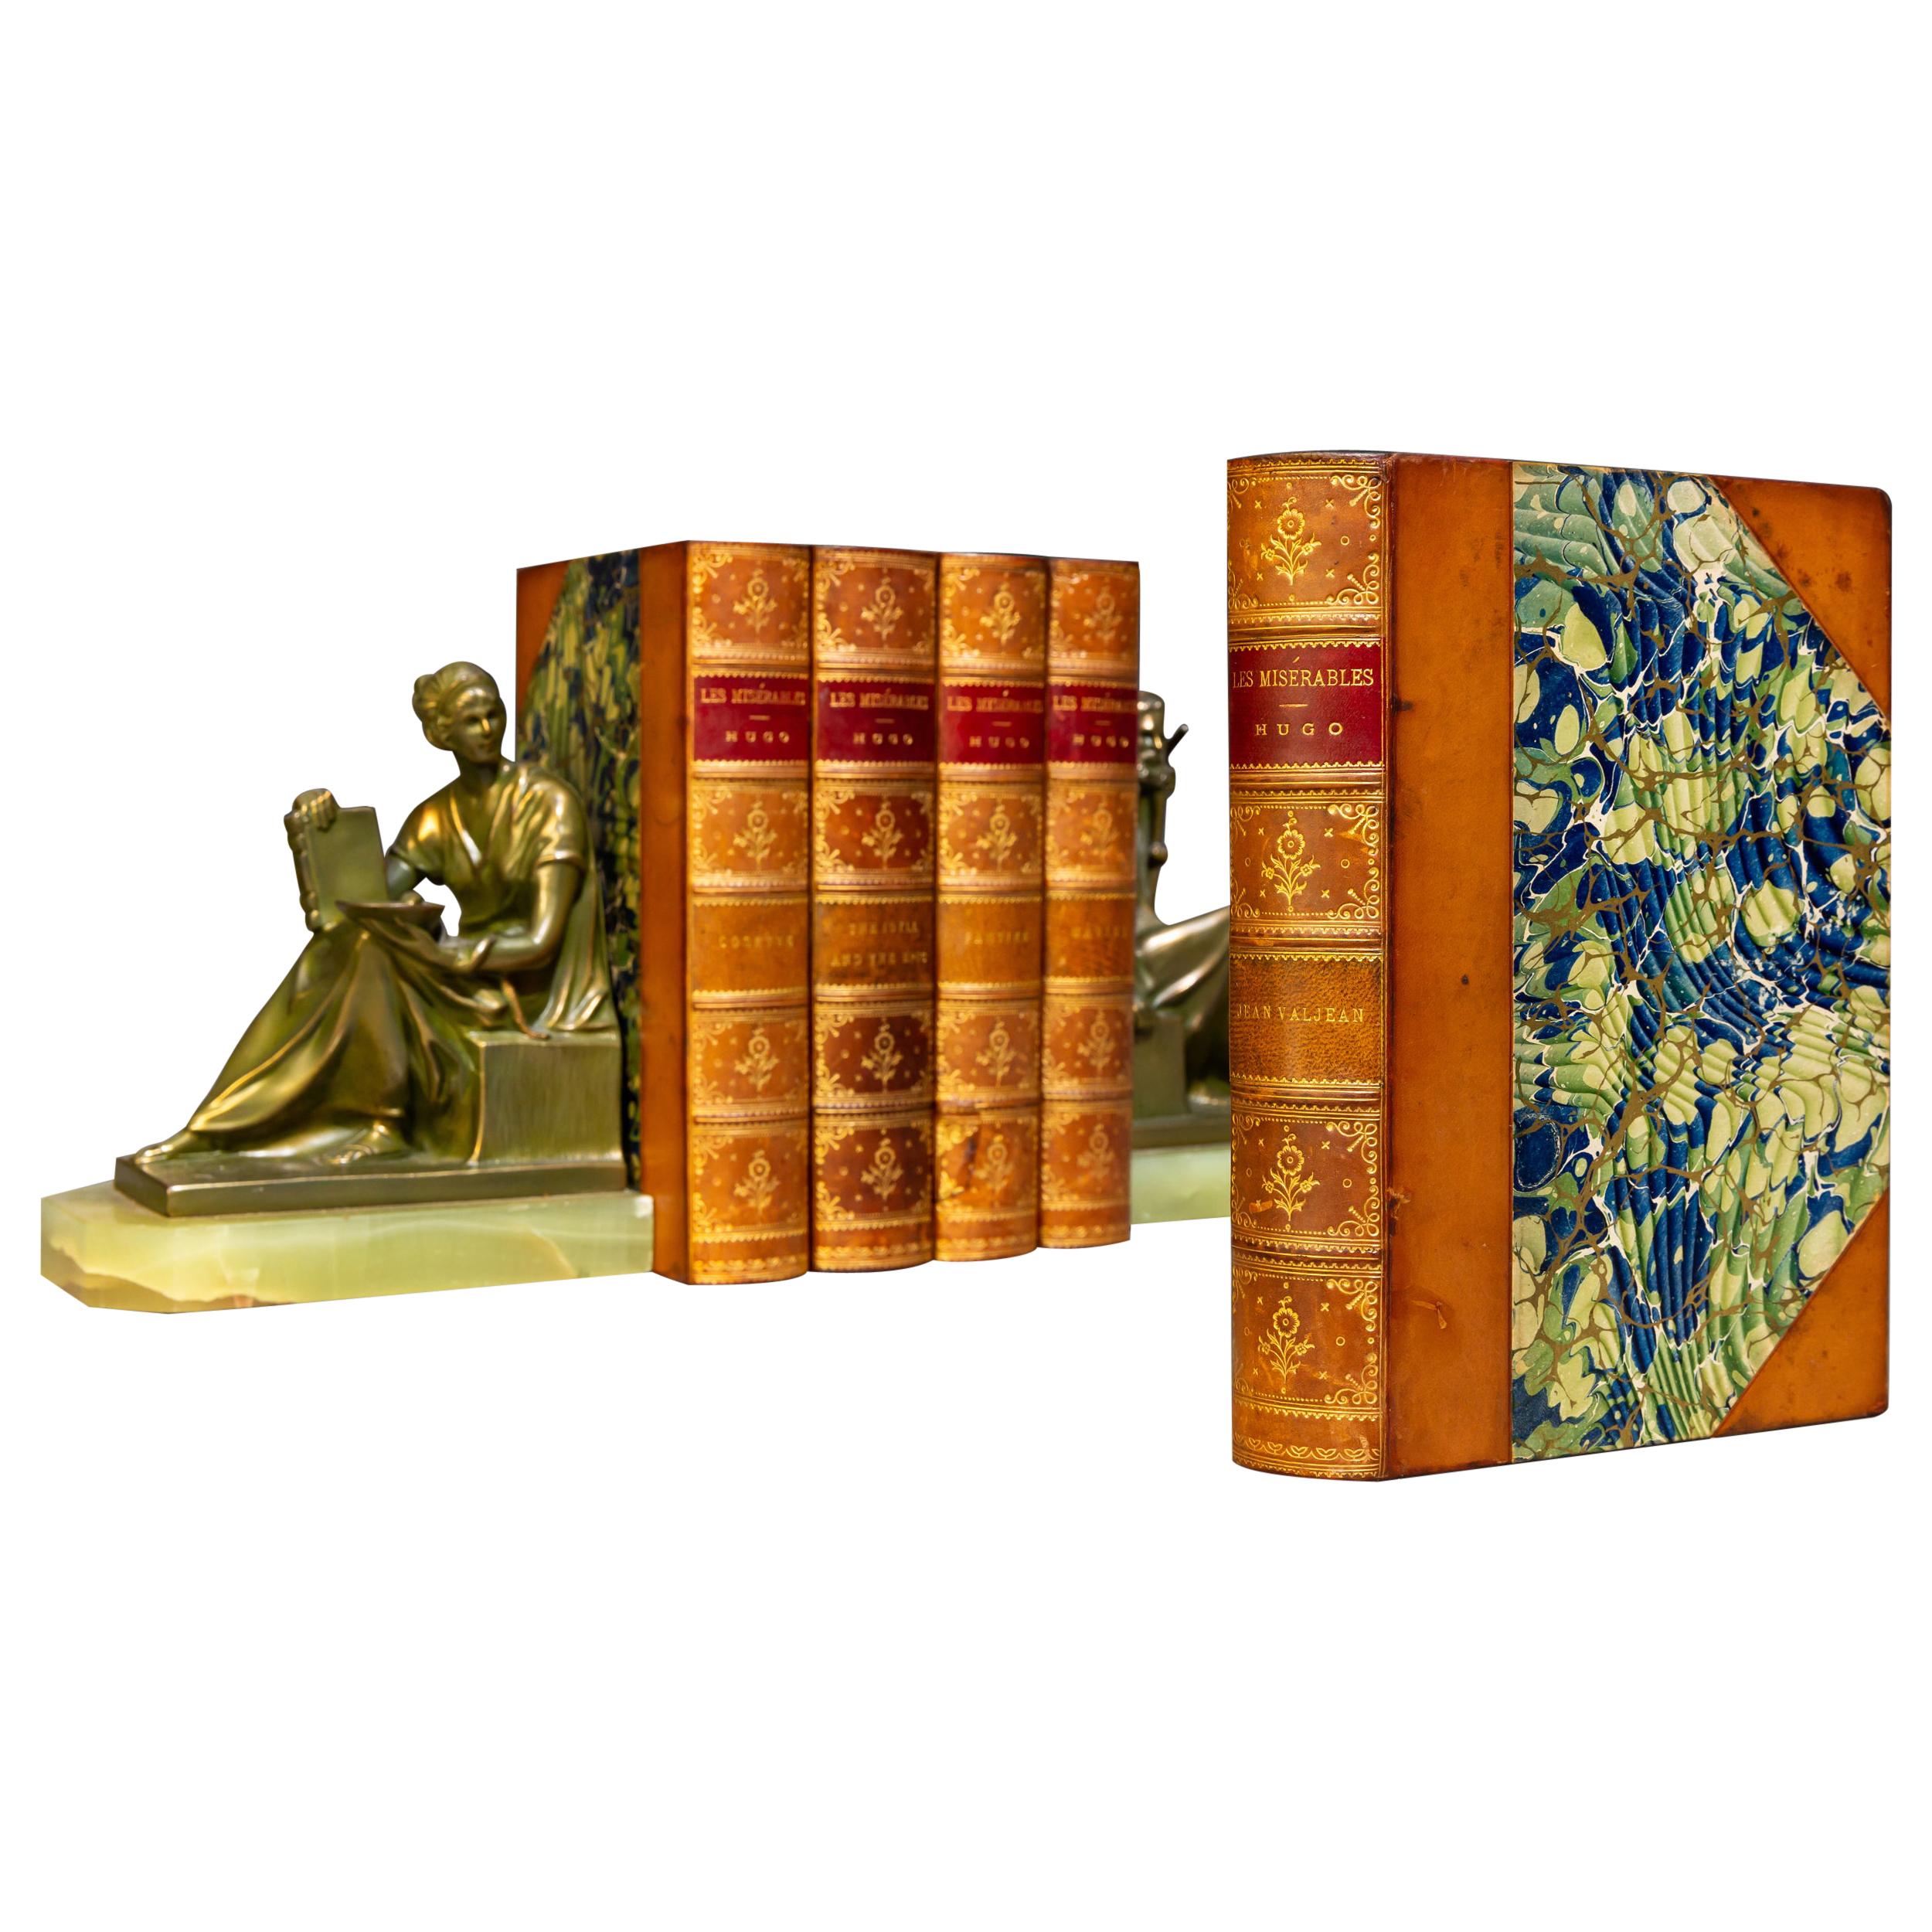 'Book Sets' 5 Volumes, Victor Hugo, Les Miserables